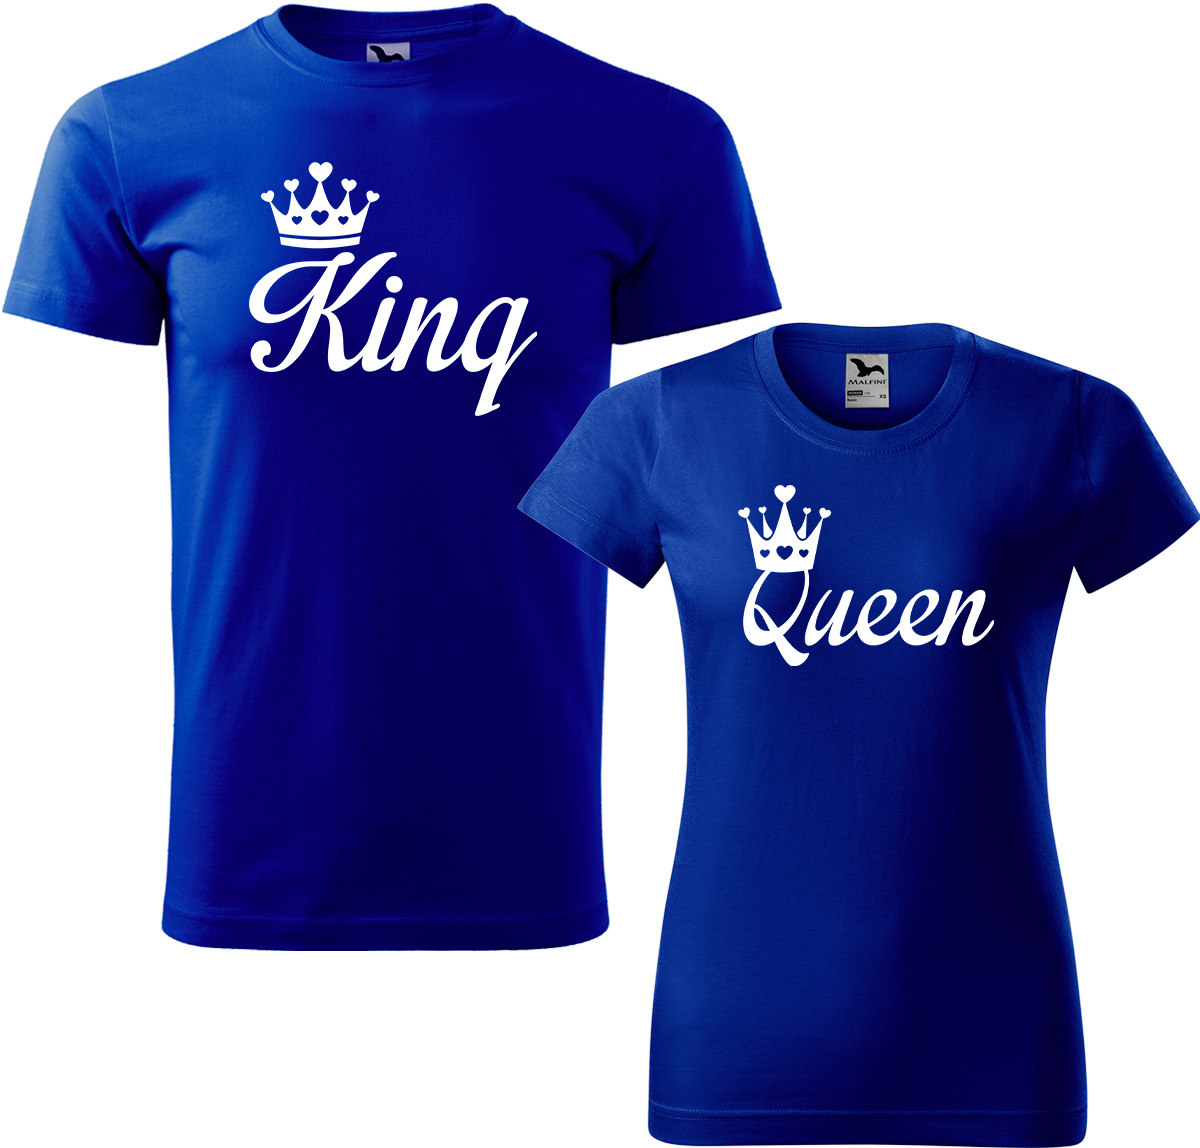 Trička pro páry - King a queen Barva: Královská modrá (05), Velikost dámské tričko: S, Velikost pánské tričko: 4XL